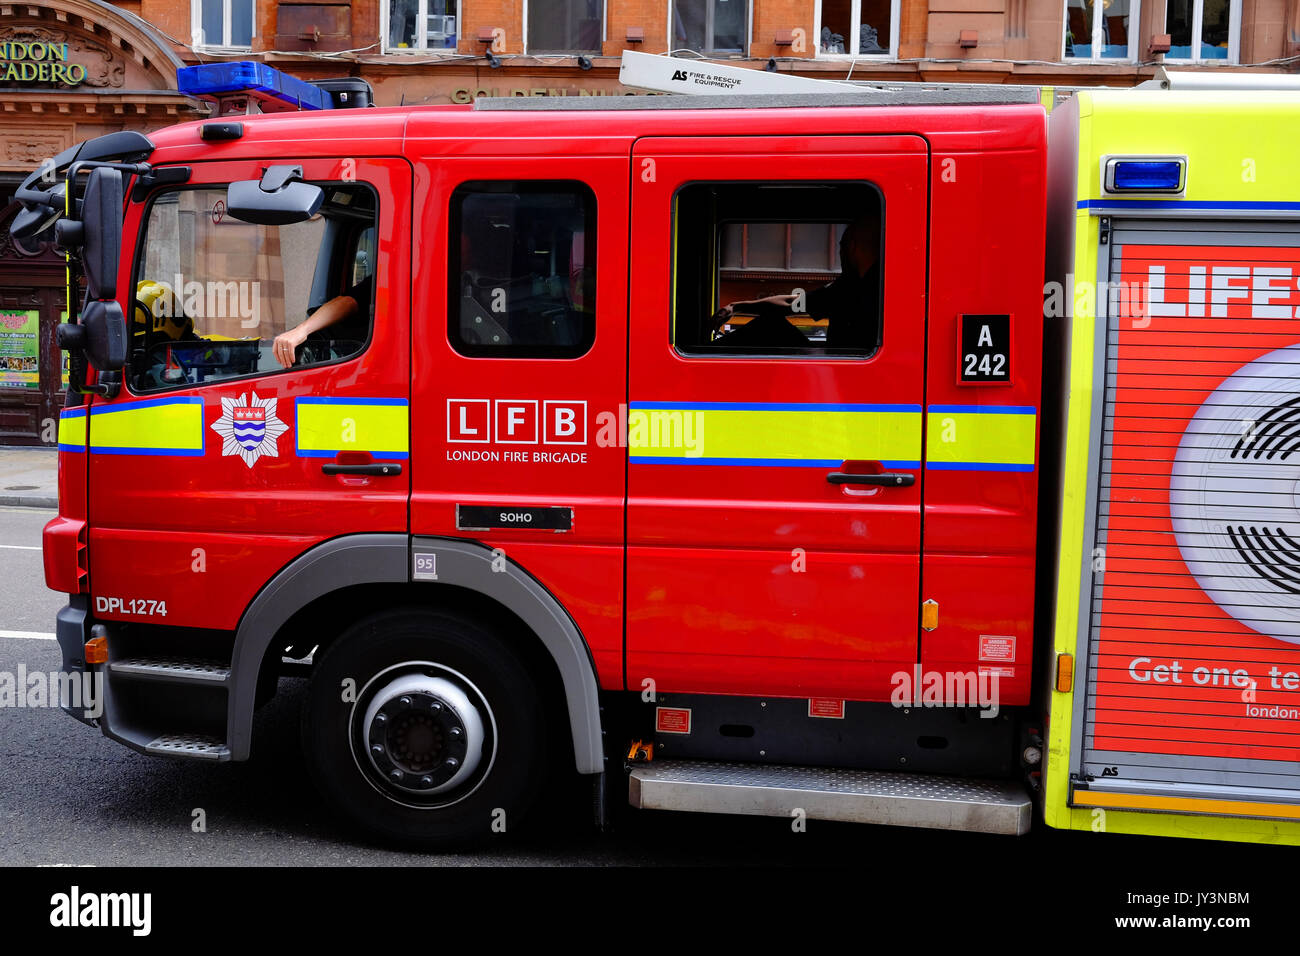 Ein feuerwehrauto der Londoner Feuerwehr zurück entlang Shaftesbury Avene im Londoner West End, Soho Fire Station Stockfoto